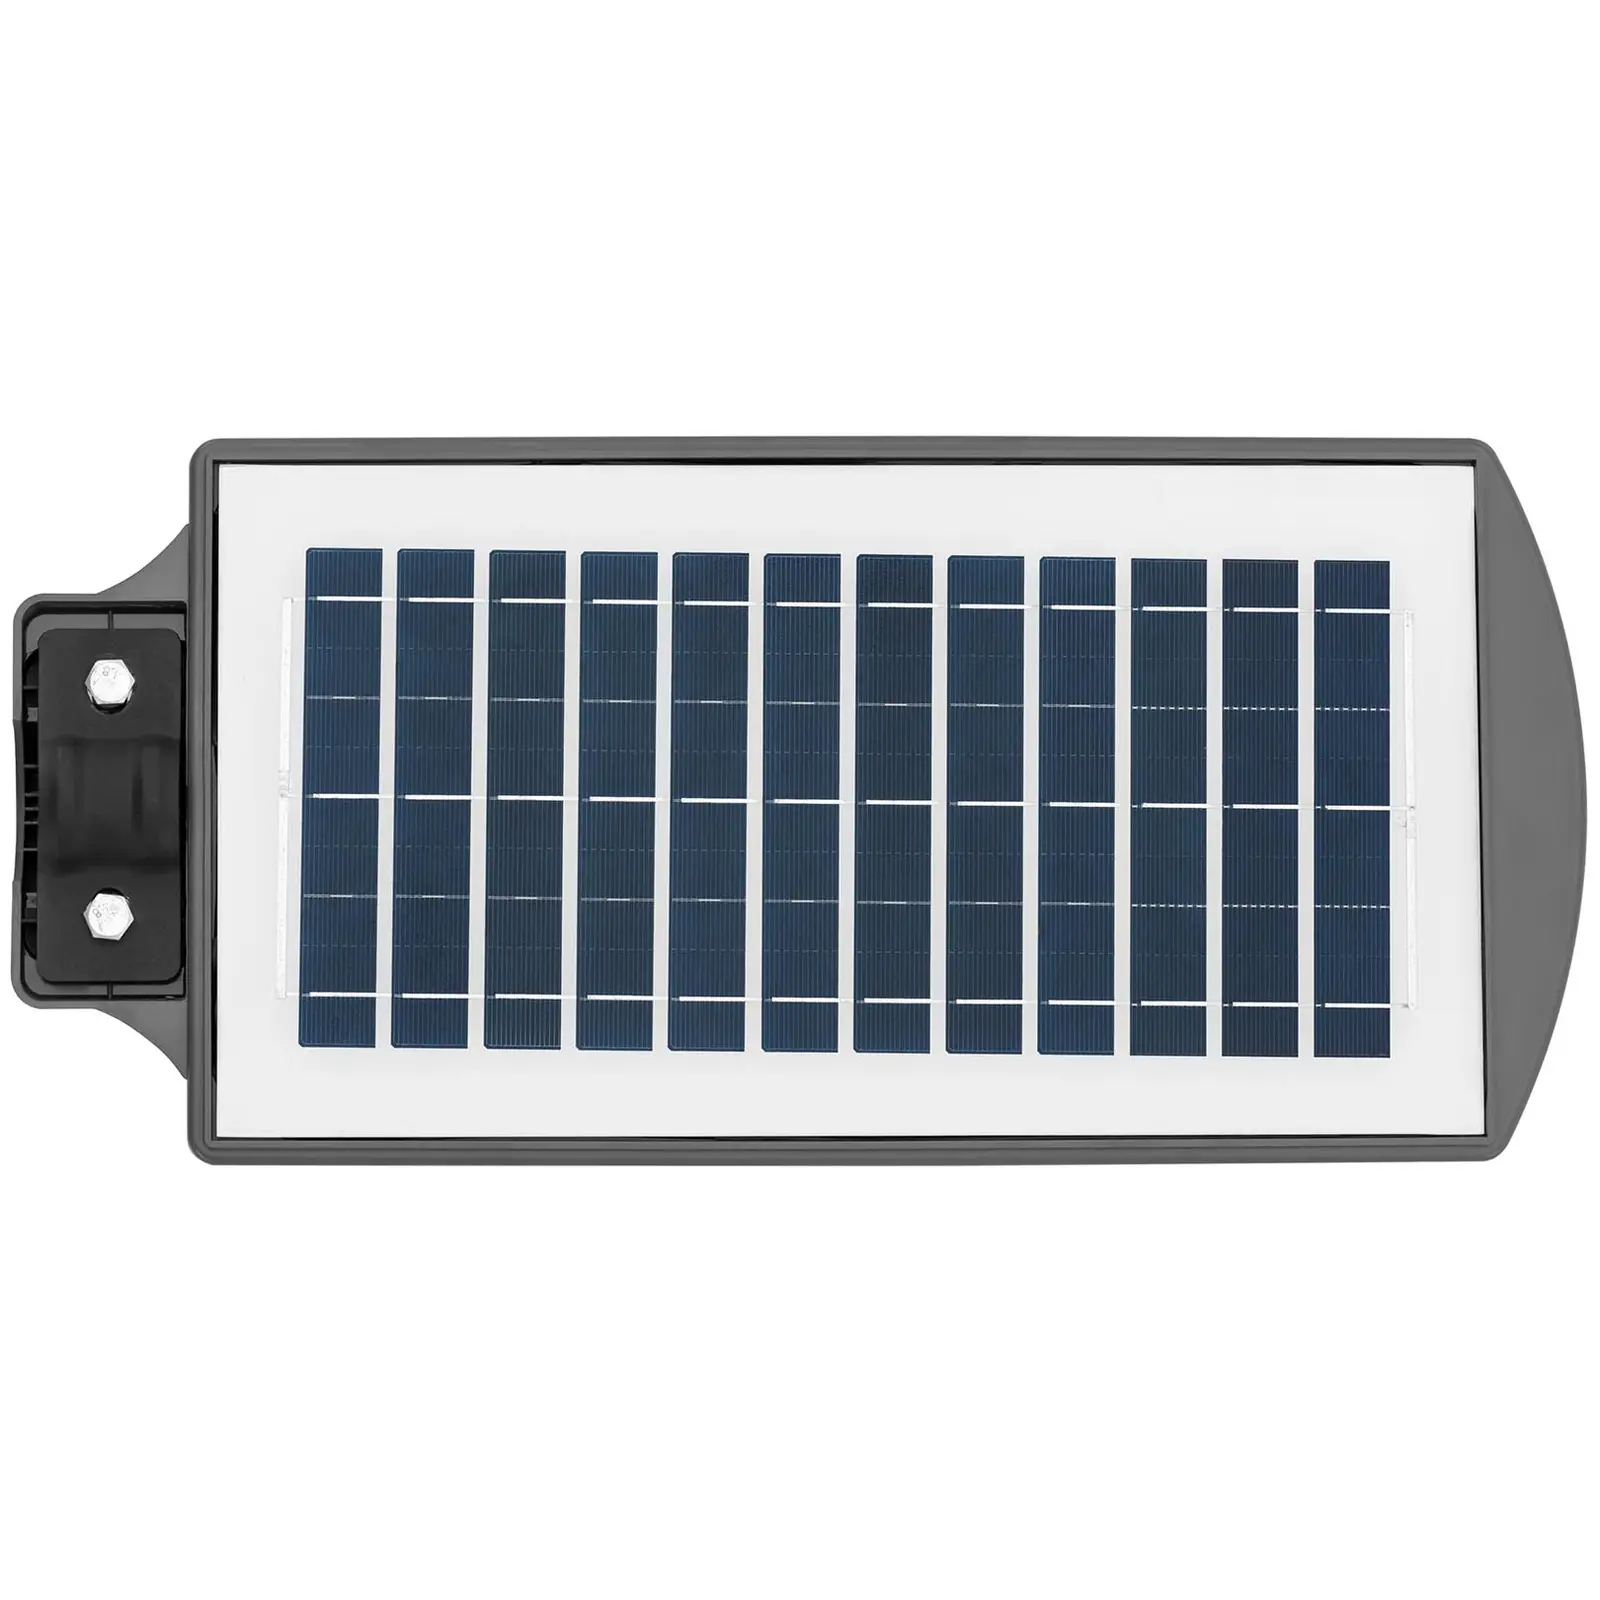 Solar-Außenleuchte - Bewegungssensor - 200 W - 6000 - 6500 K - 14 - 16 h - IP54